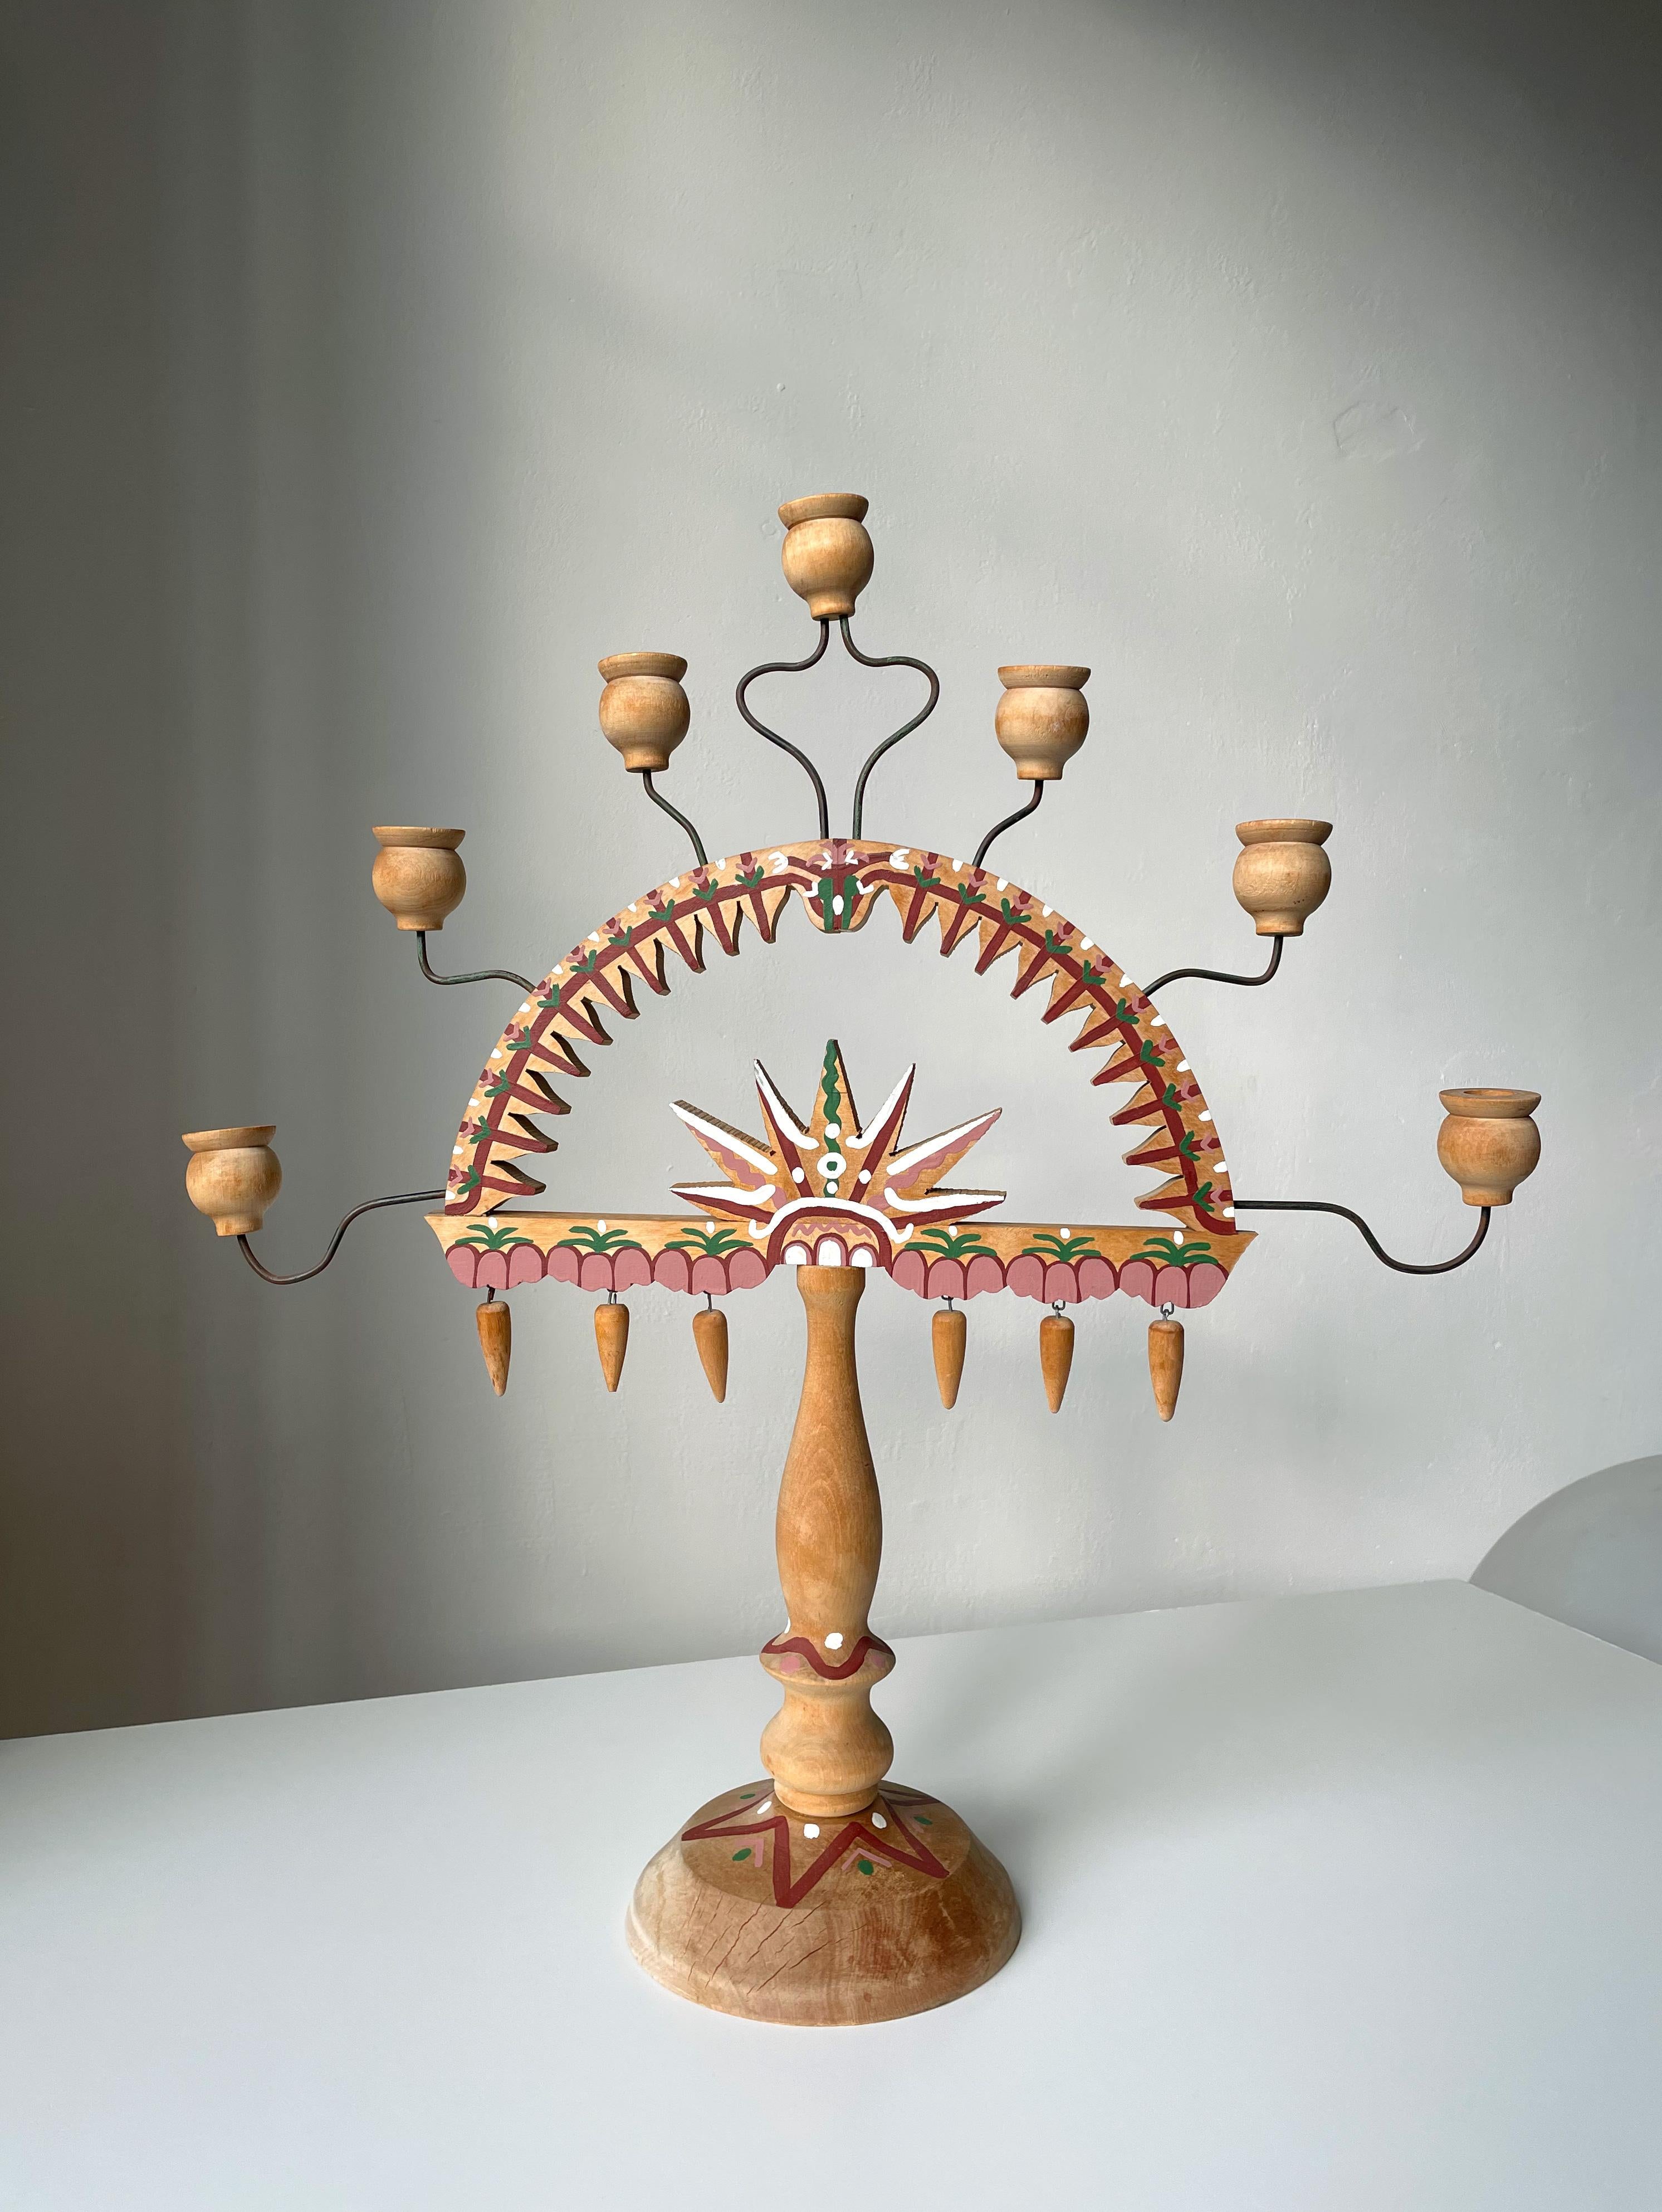 Grand candélabre folklorique en bois, fabriqué à la main, avec sept bras attachés à de fines tiges métalliques légèrement réglables. Peint à la main dans un style folklorique nordique avec des couleurs bordeaux, rose, vert et blanc dans des motifs